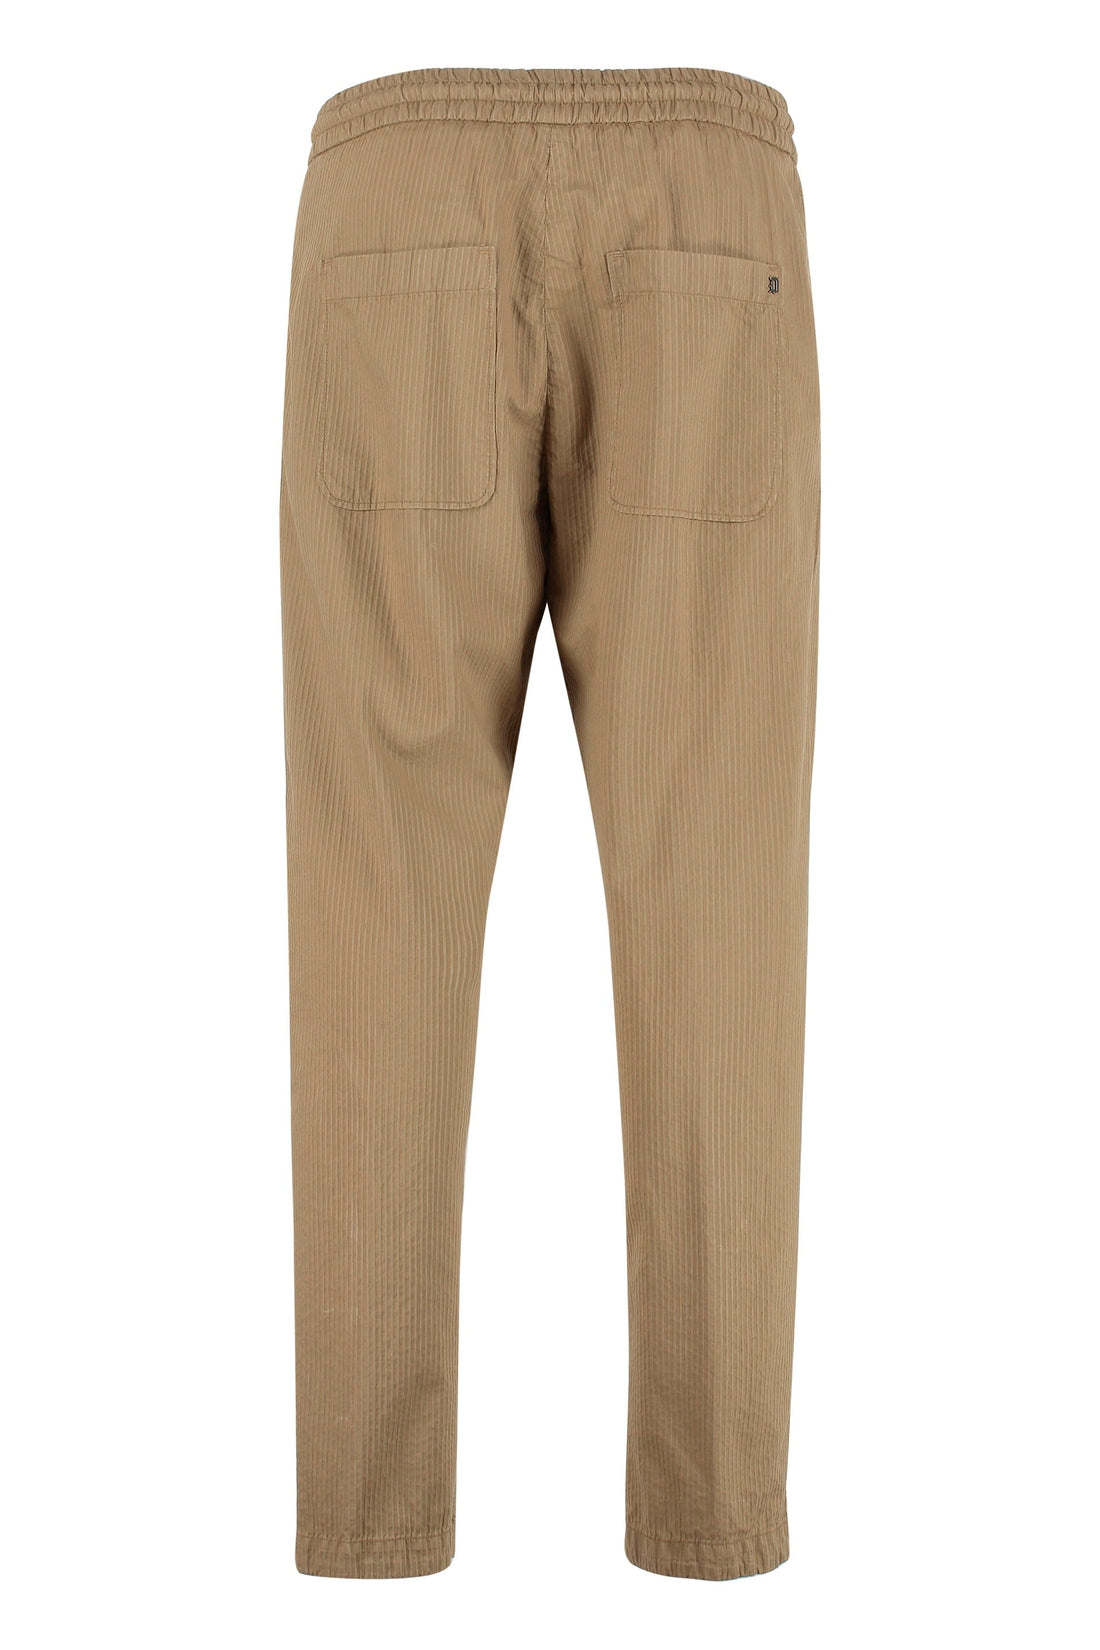 Dondup-OUTLET-SALE-Dom cotton trousers-ARCHIVIST